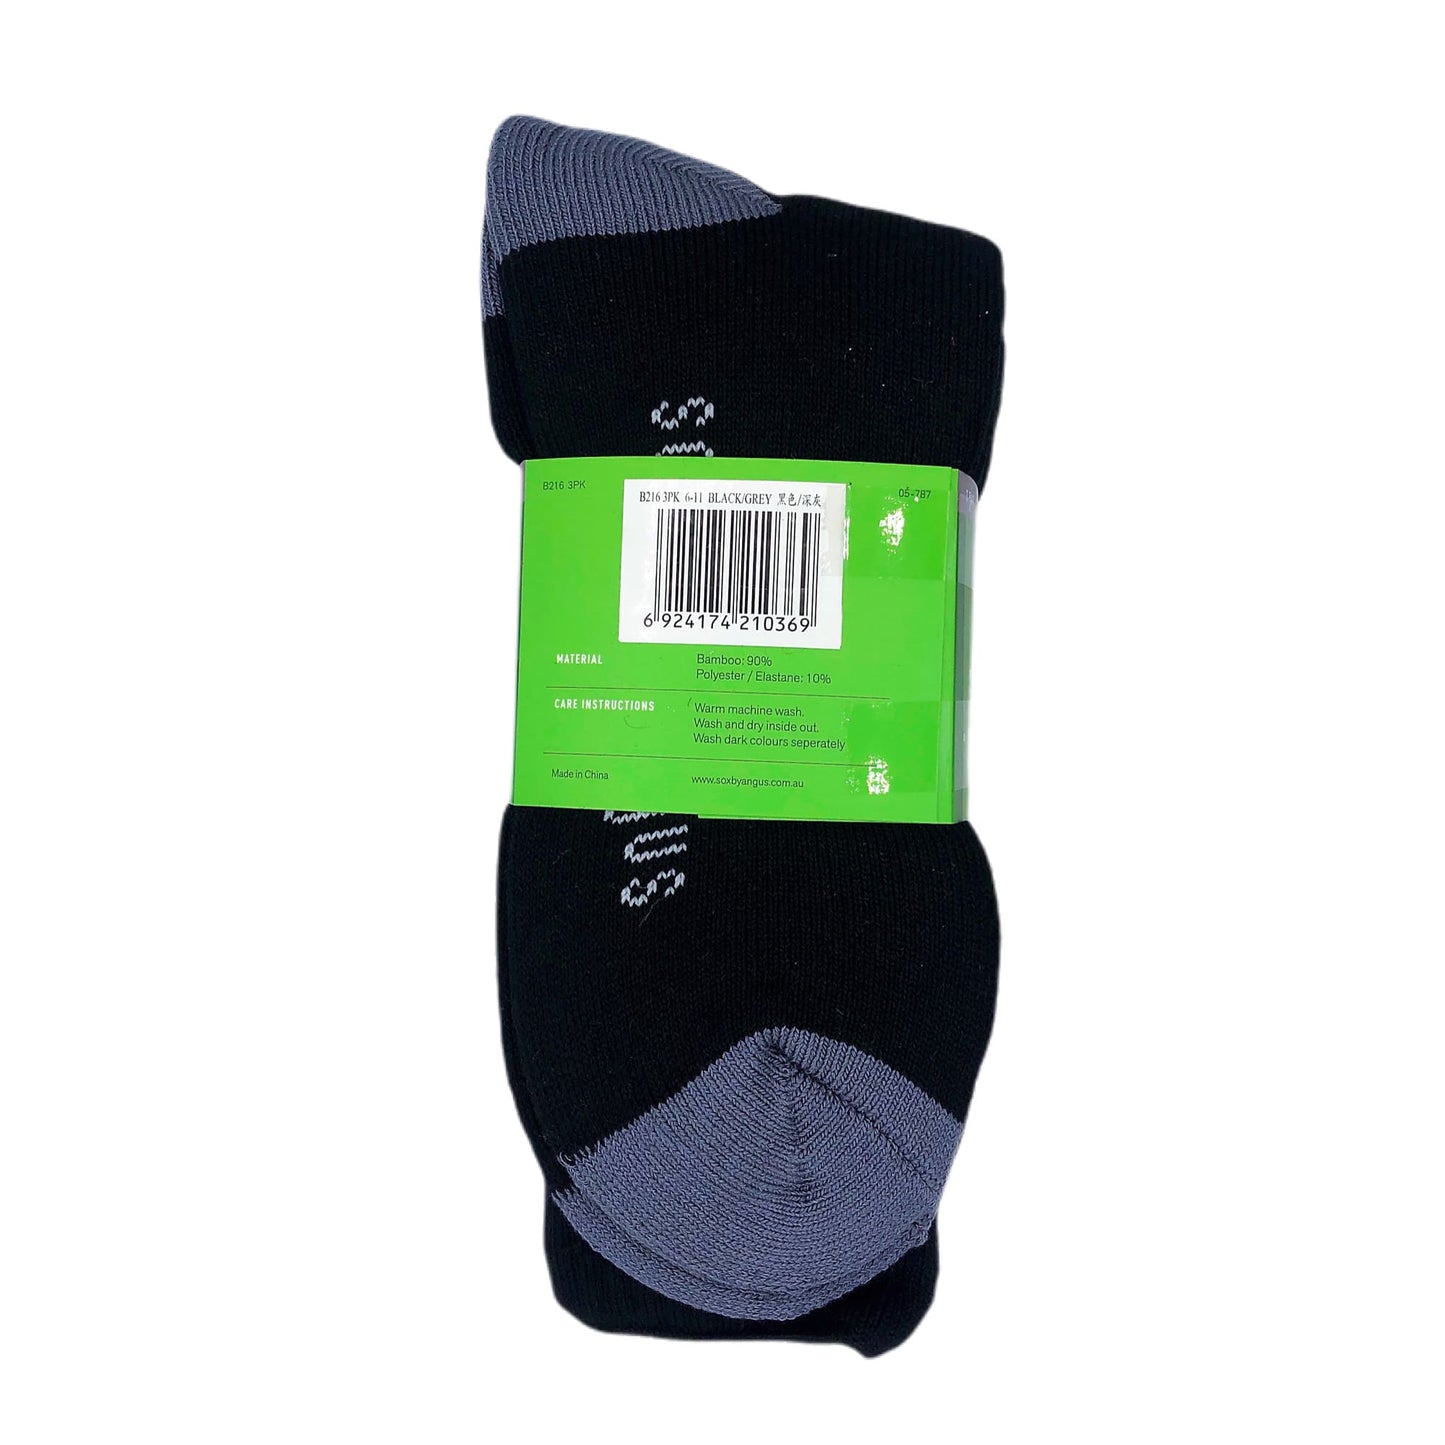 Bamboo Heavy Duty Socks - 3 Pairs Pack - Black/Grey